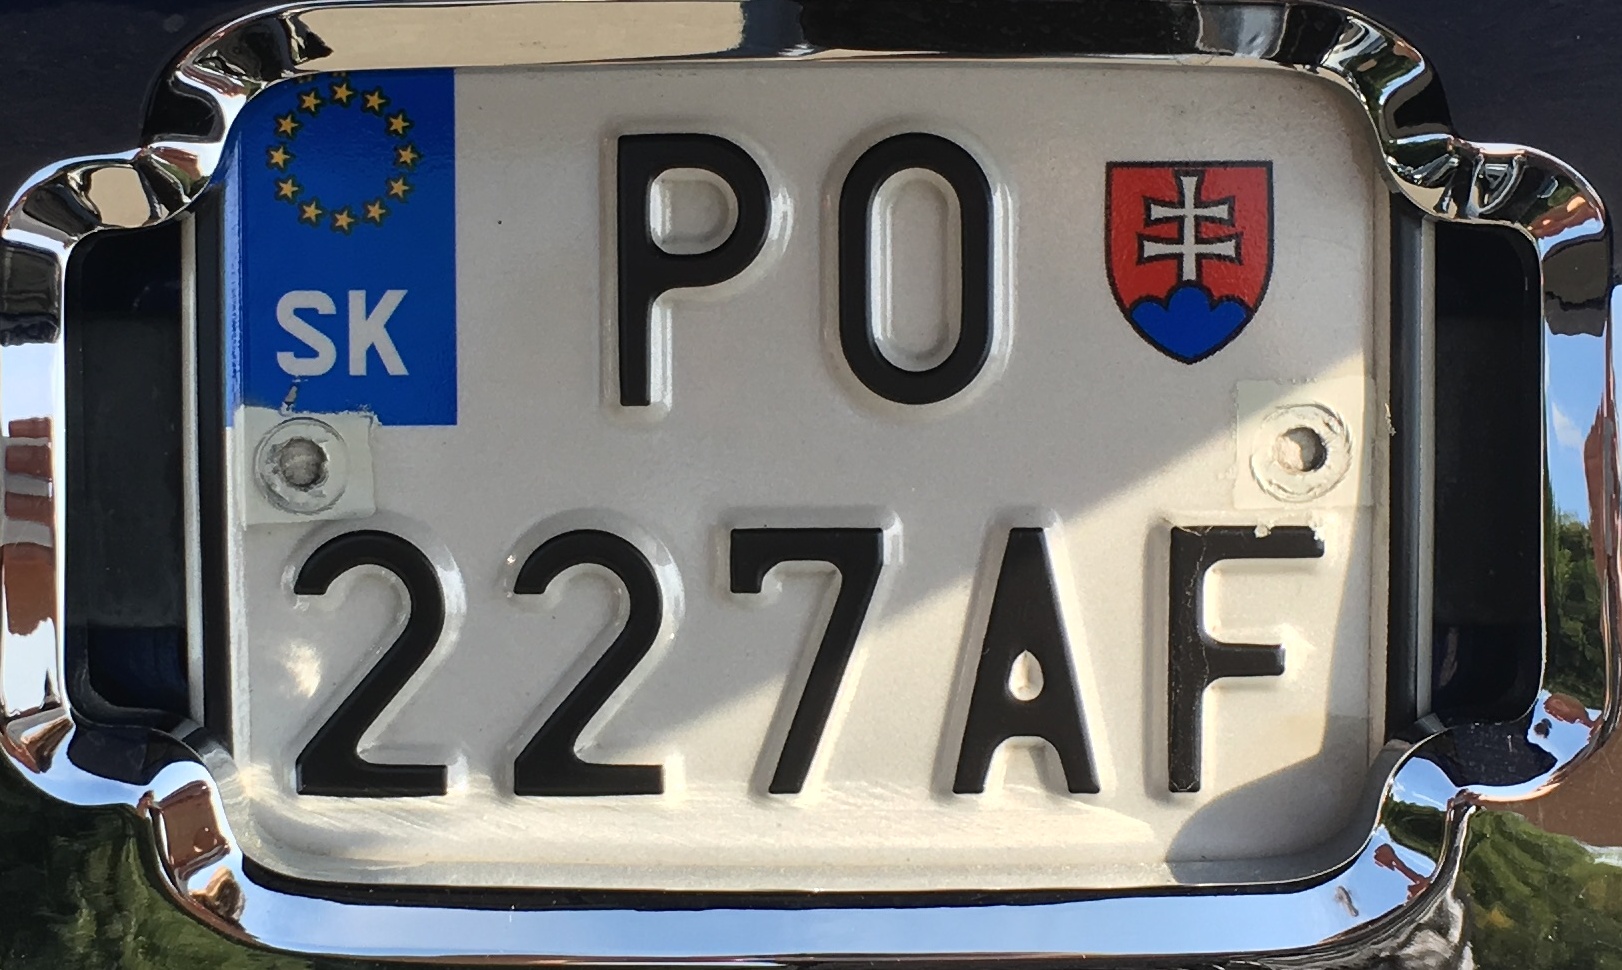 Registrační značka Slovensko - motocyklová - PO - Prešov, foto: www.podalnici.cz